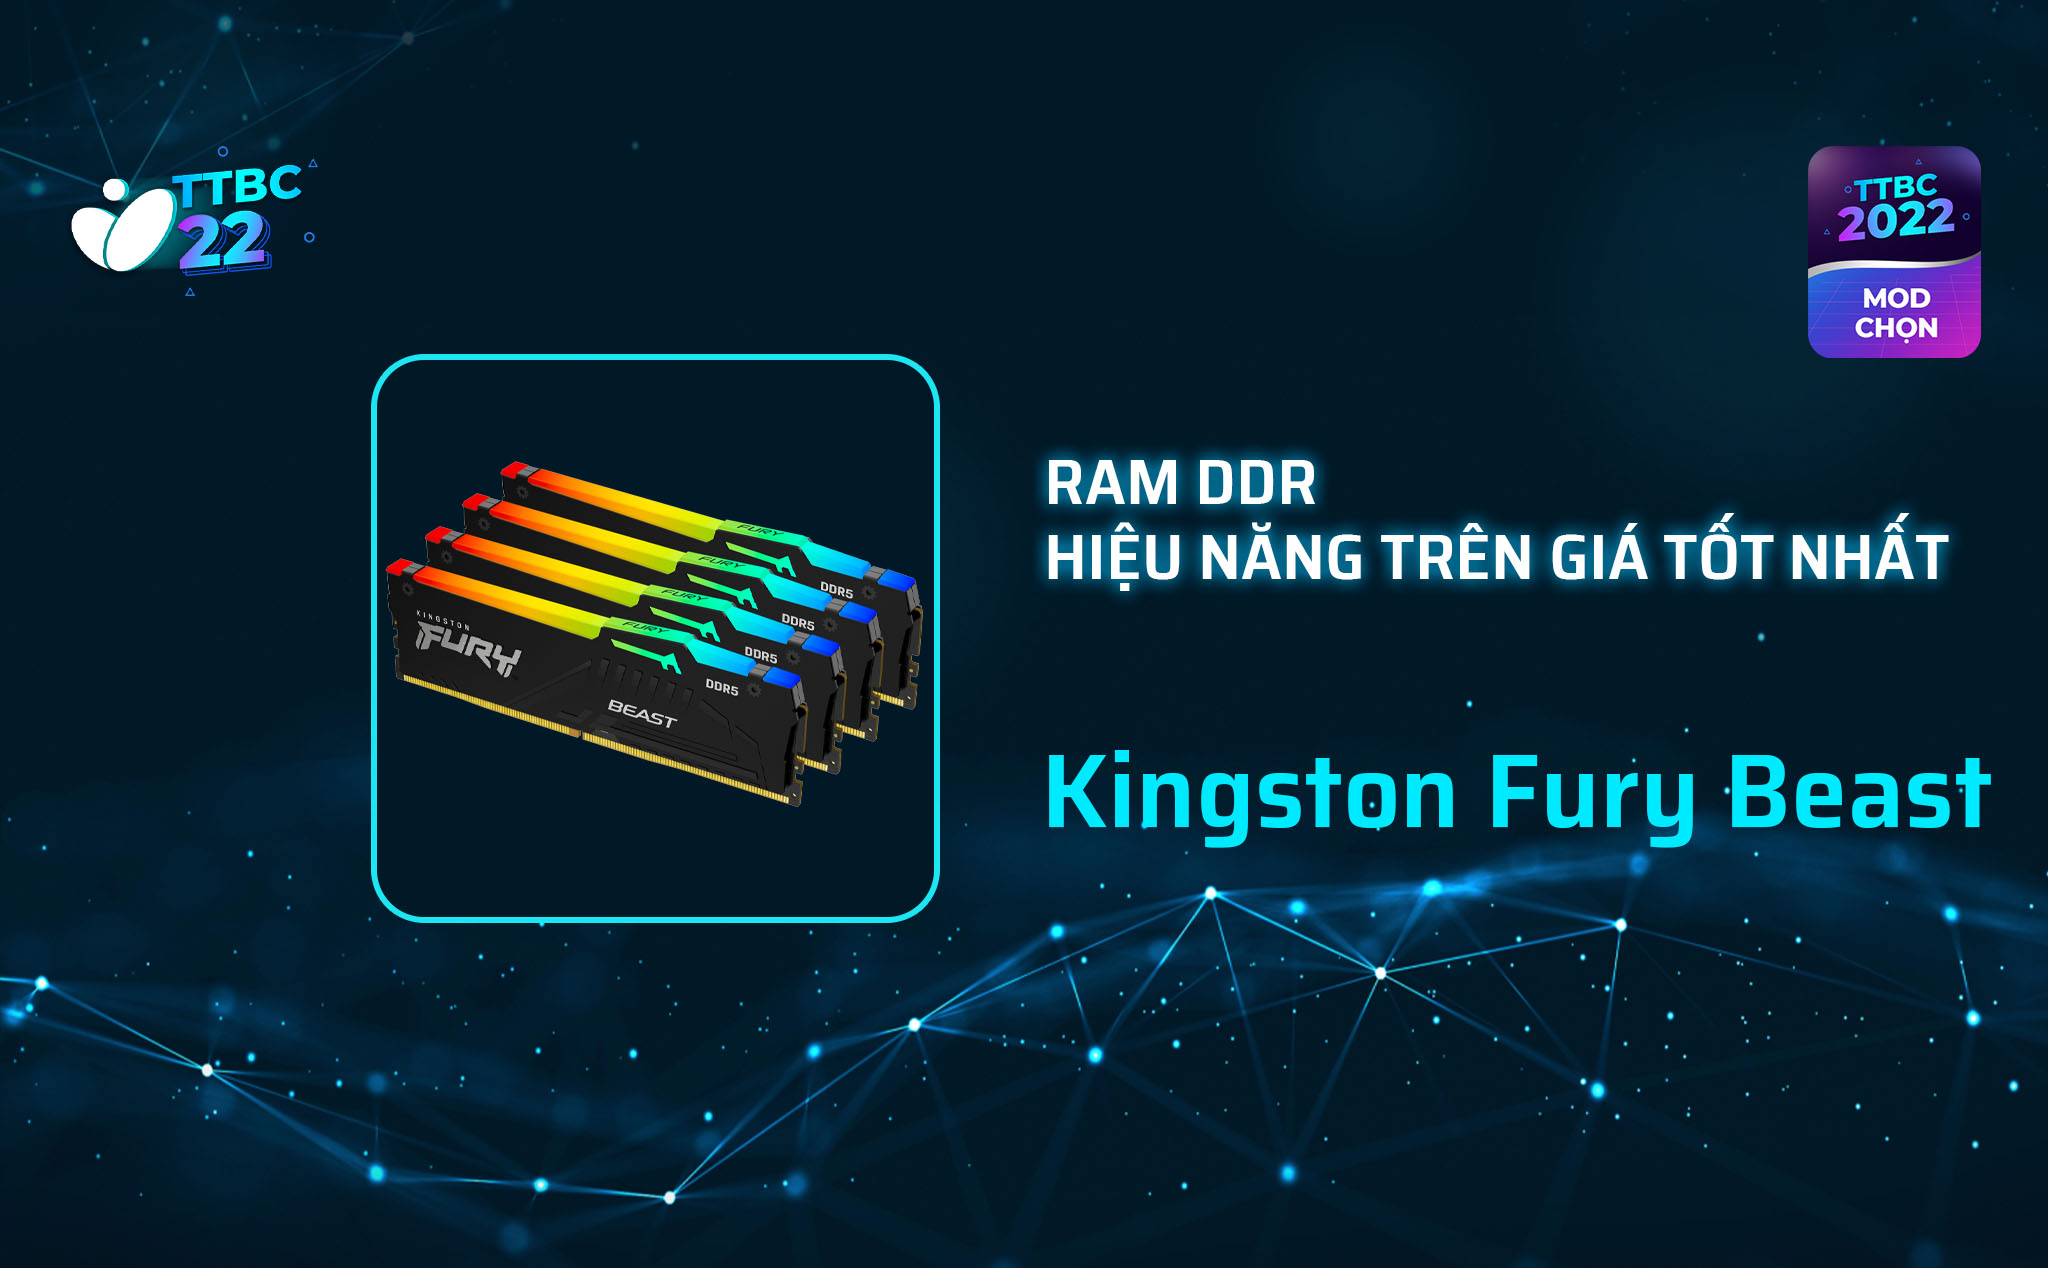 TTBC 22 - Mod Choice - Kingston Fury Beast: Kit RAM hiệu năng trên giá ngon nhất